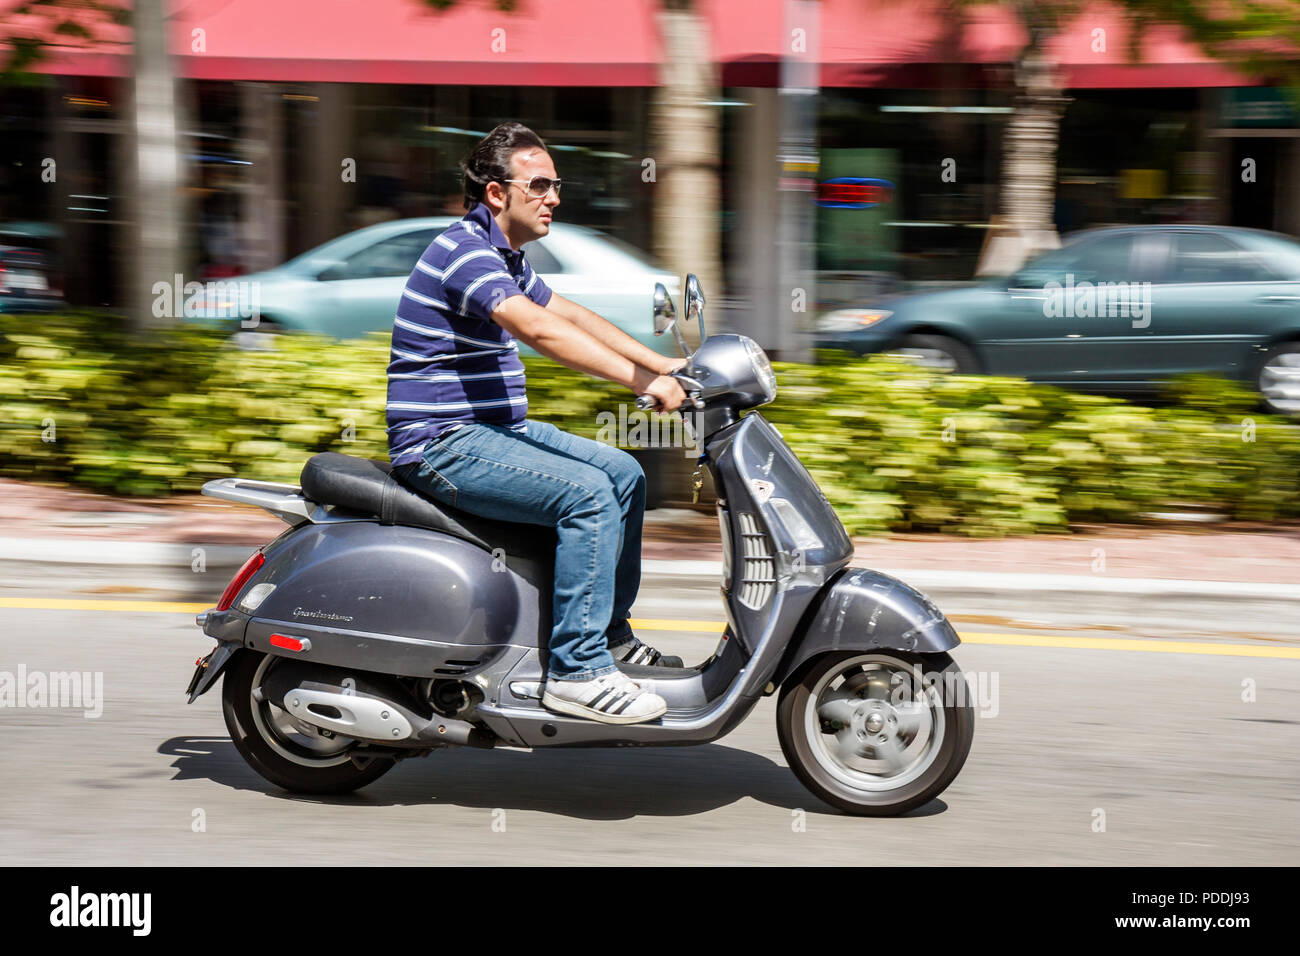 Miami Beach Florida,Washington Avenue,adulti uomo uomo uomo uomo uomini, scooter a motore, trasporto alternativo, senza casco, non sicuro, sicurezza, due 2 W. Foto Stock